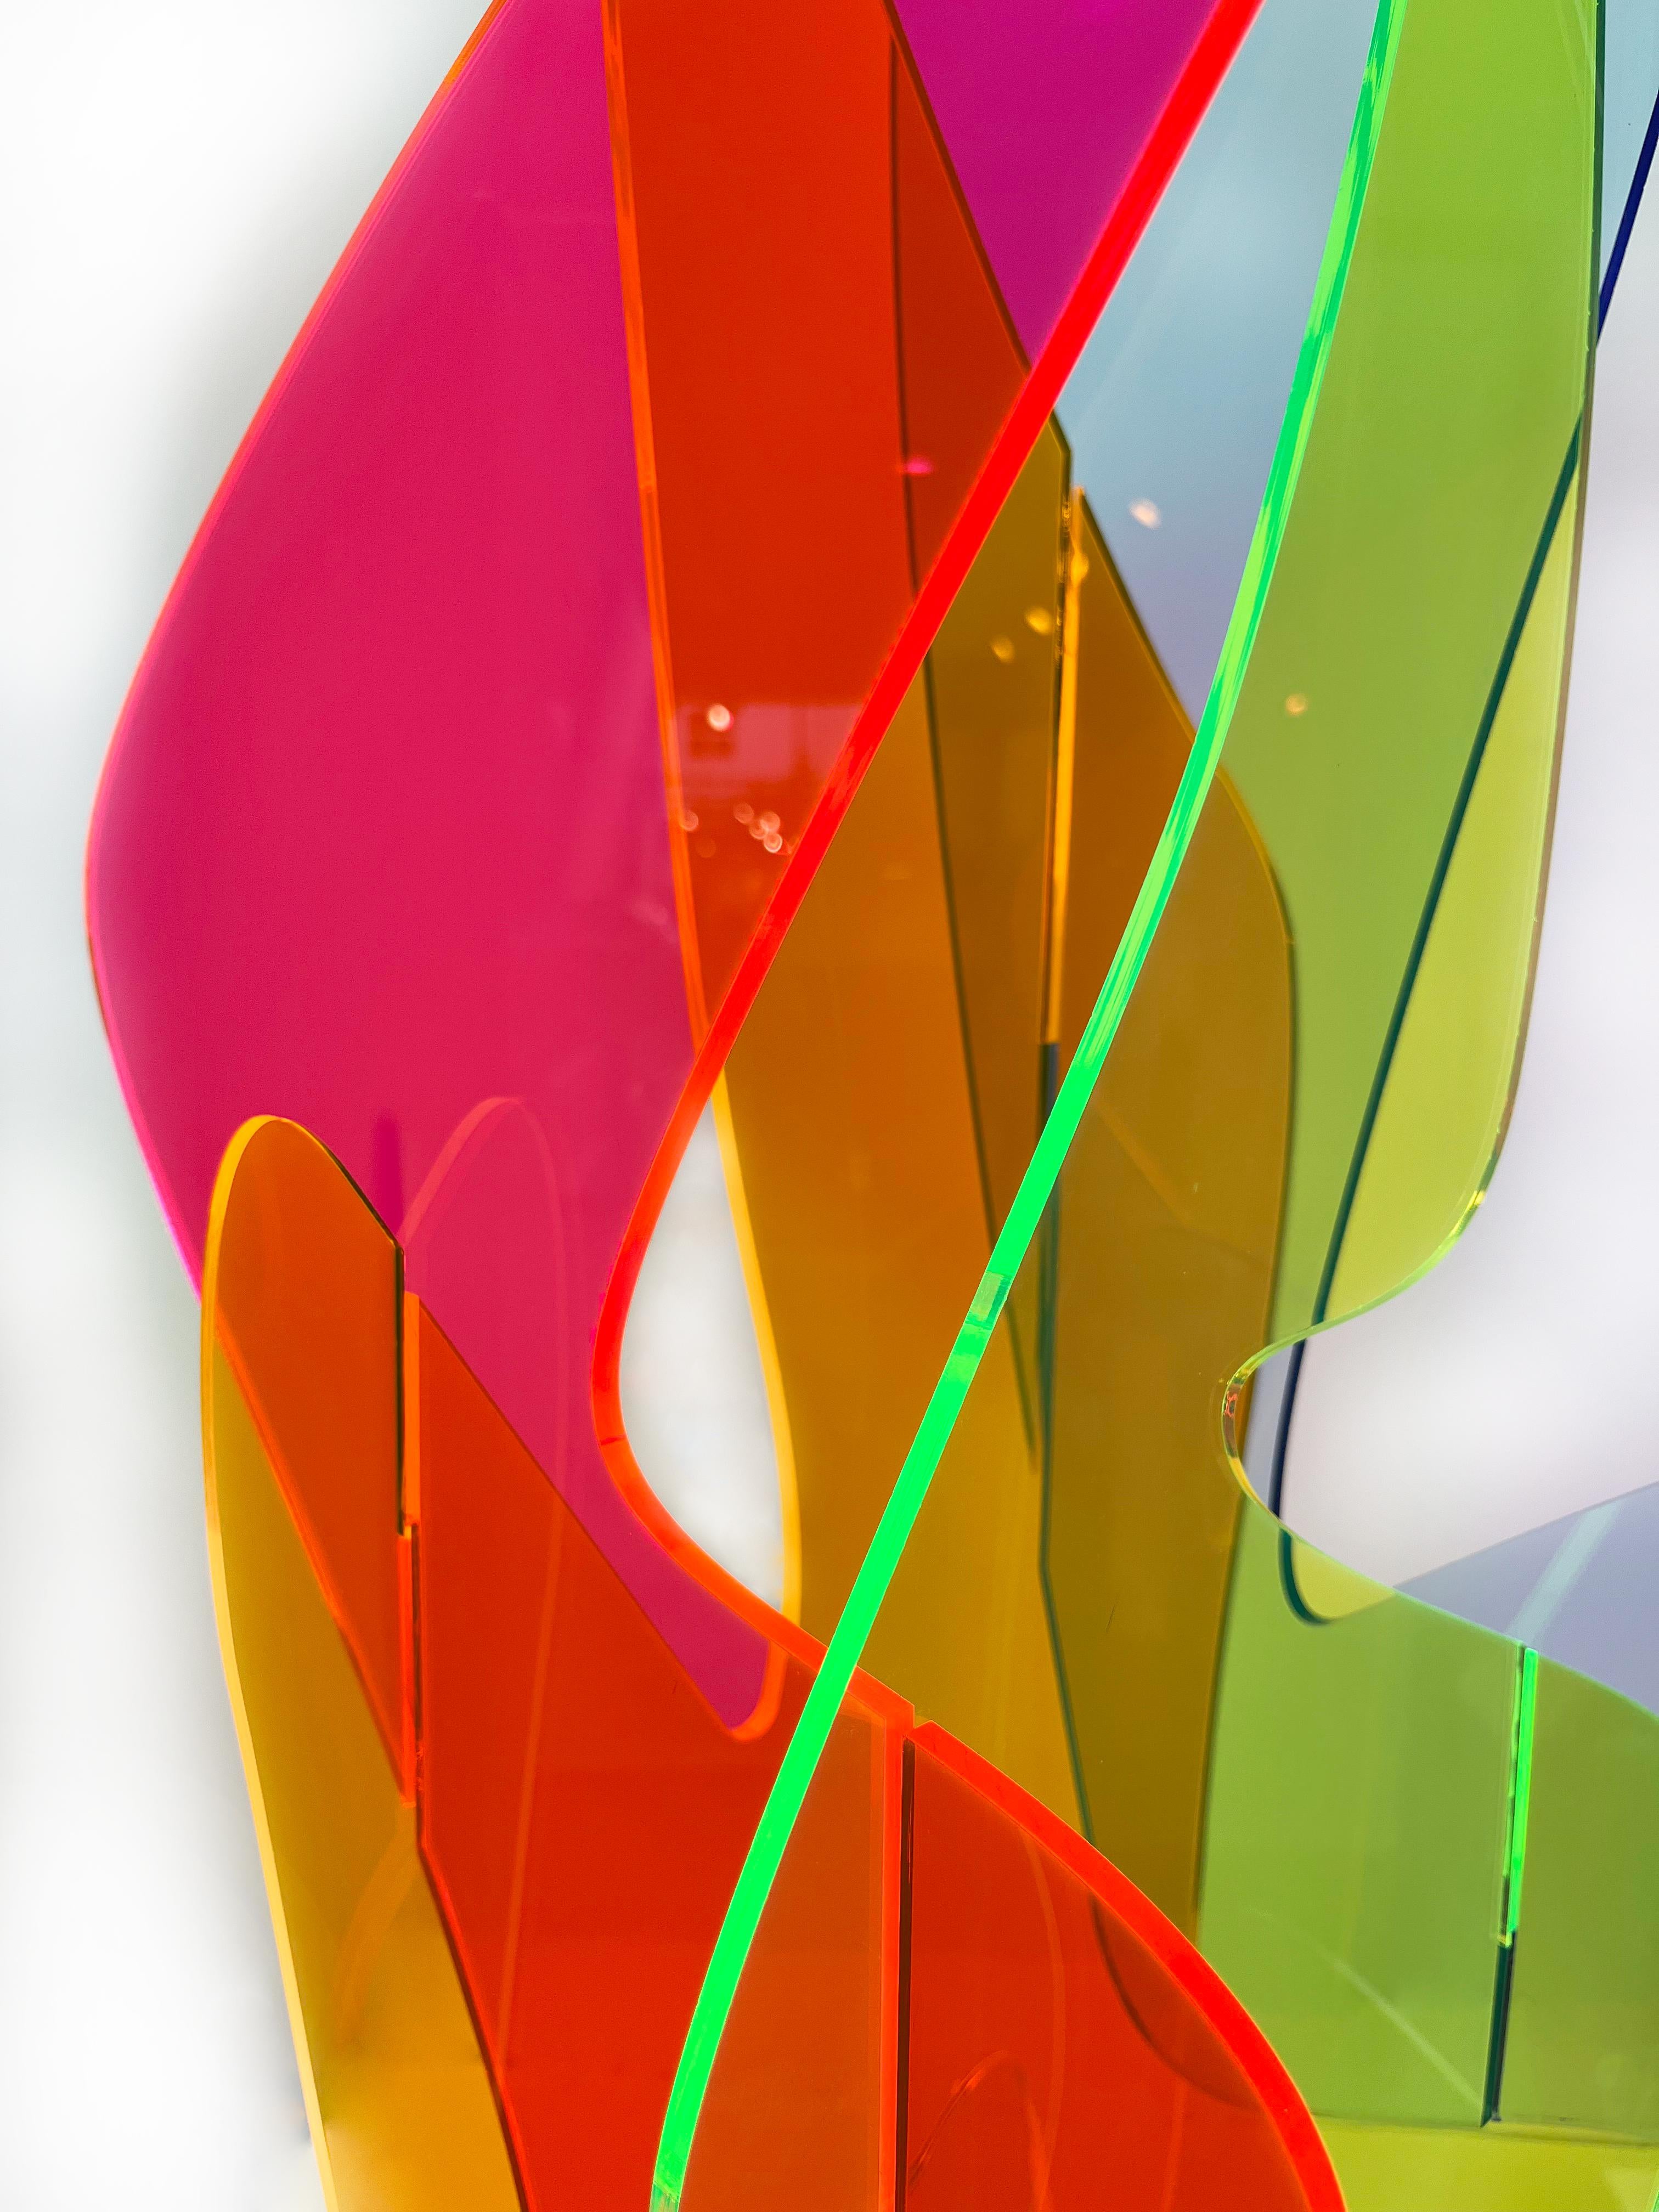 Organism #11, colorful acrylic 3D sculpture, vibrant plexi design sculpture - Sculpture by Madison Brimble